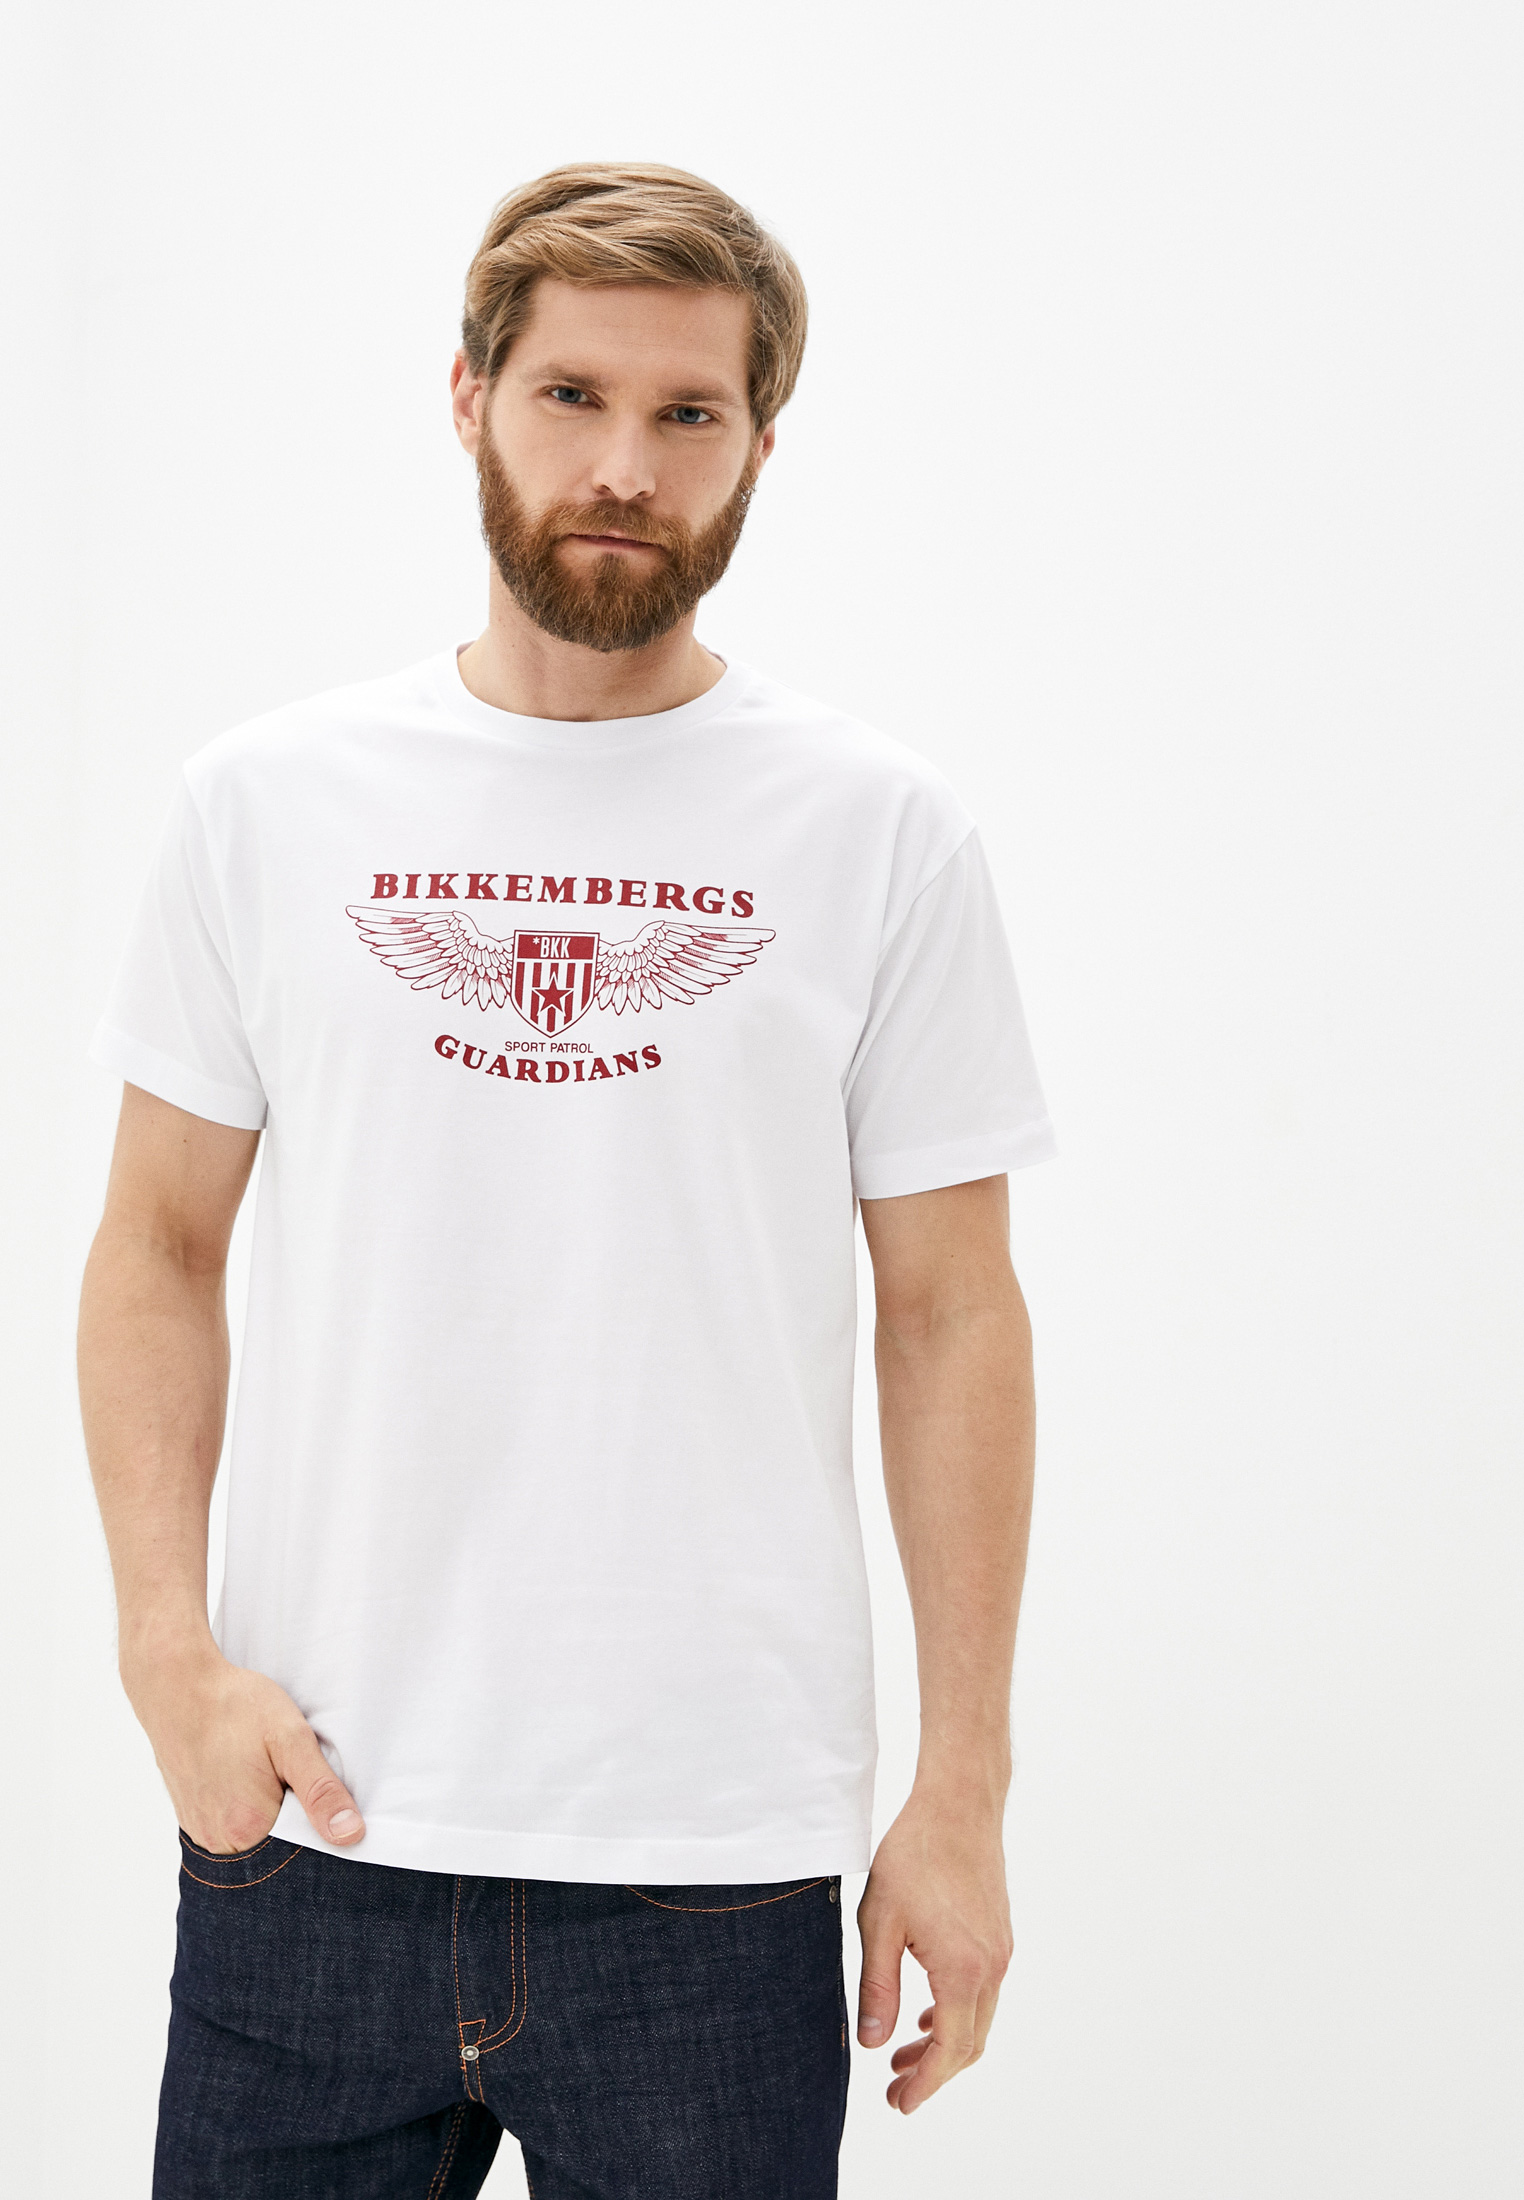 Мужская футболка Bikkembergs (Биккембергс) C 7 022 8T E 1951: изображение 1